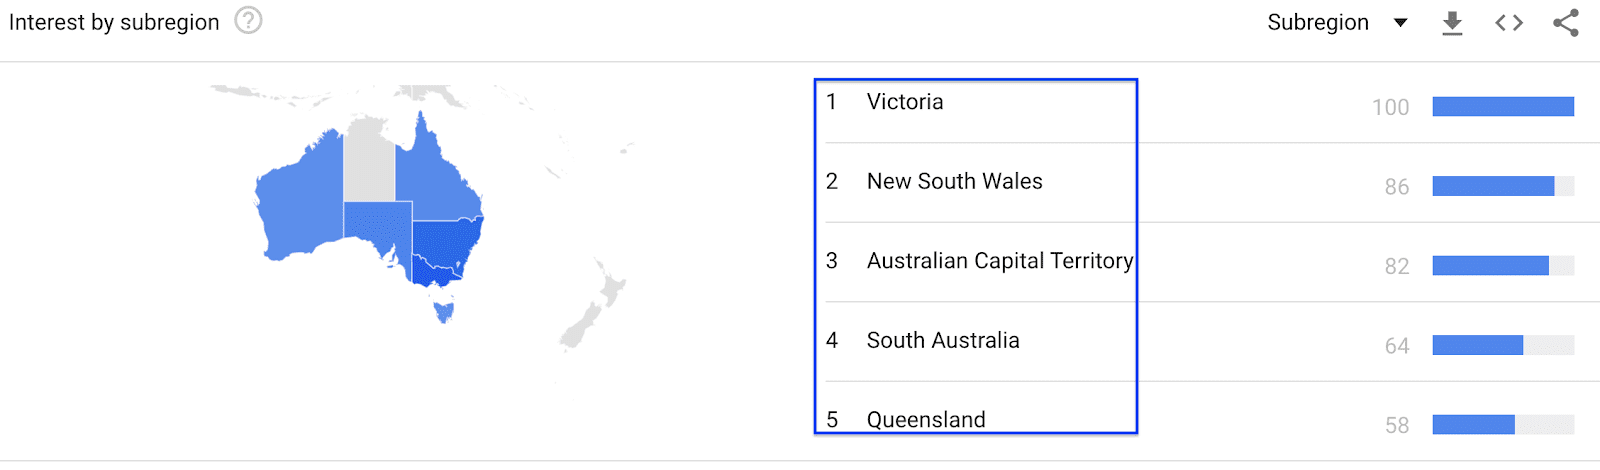 region google trends